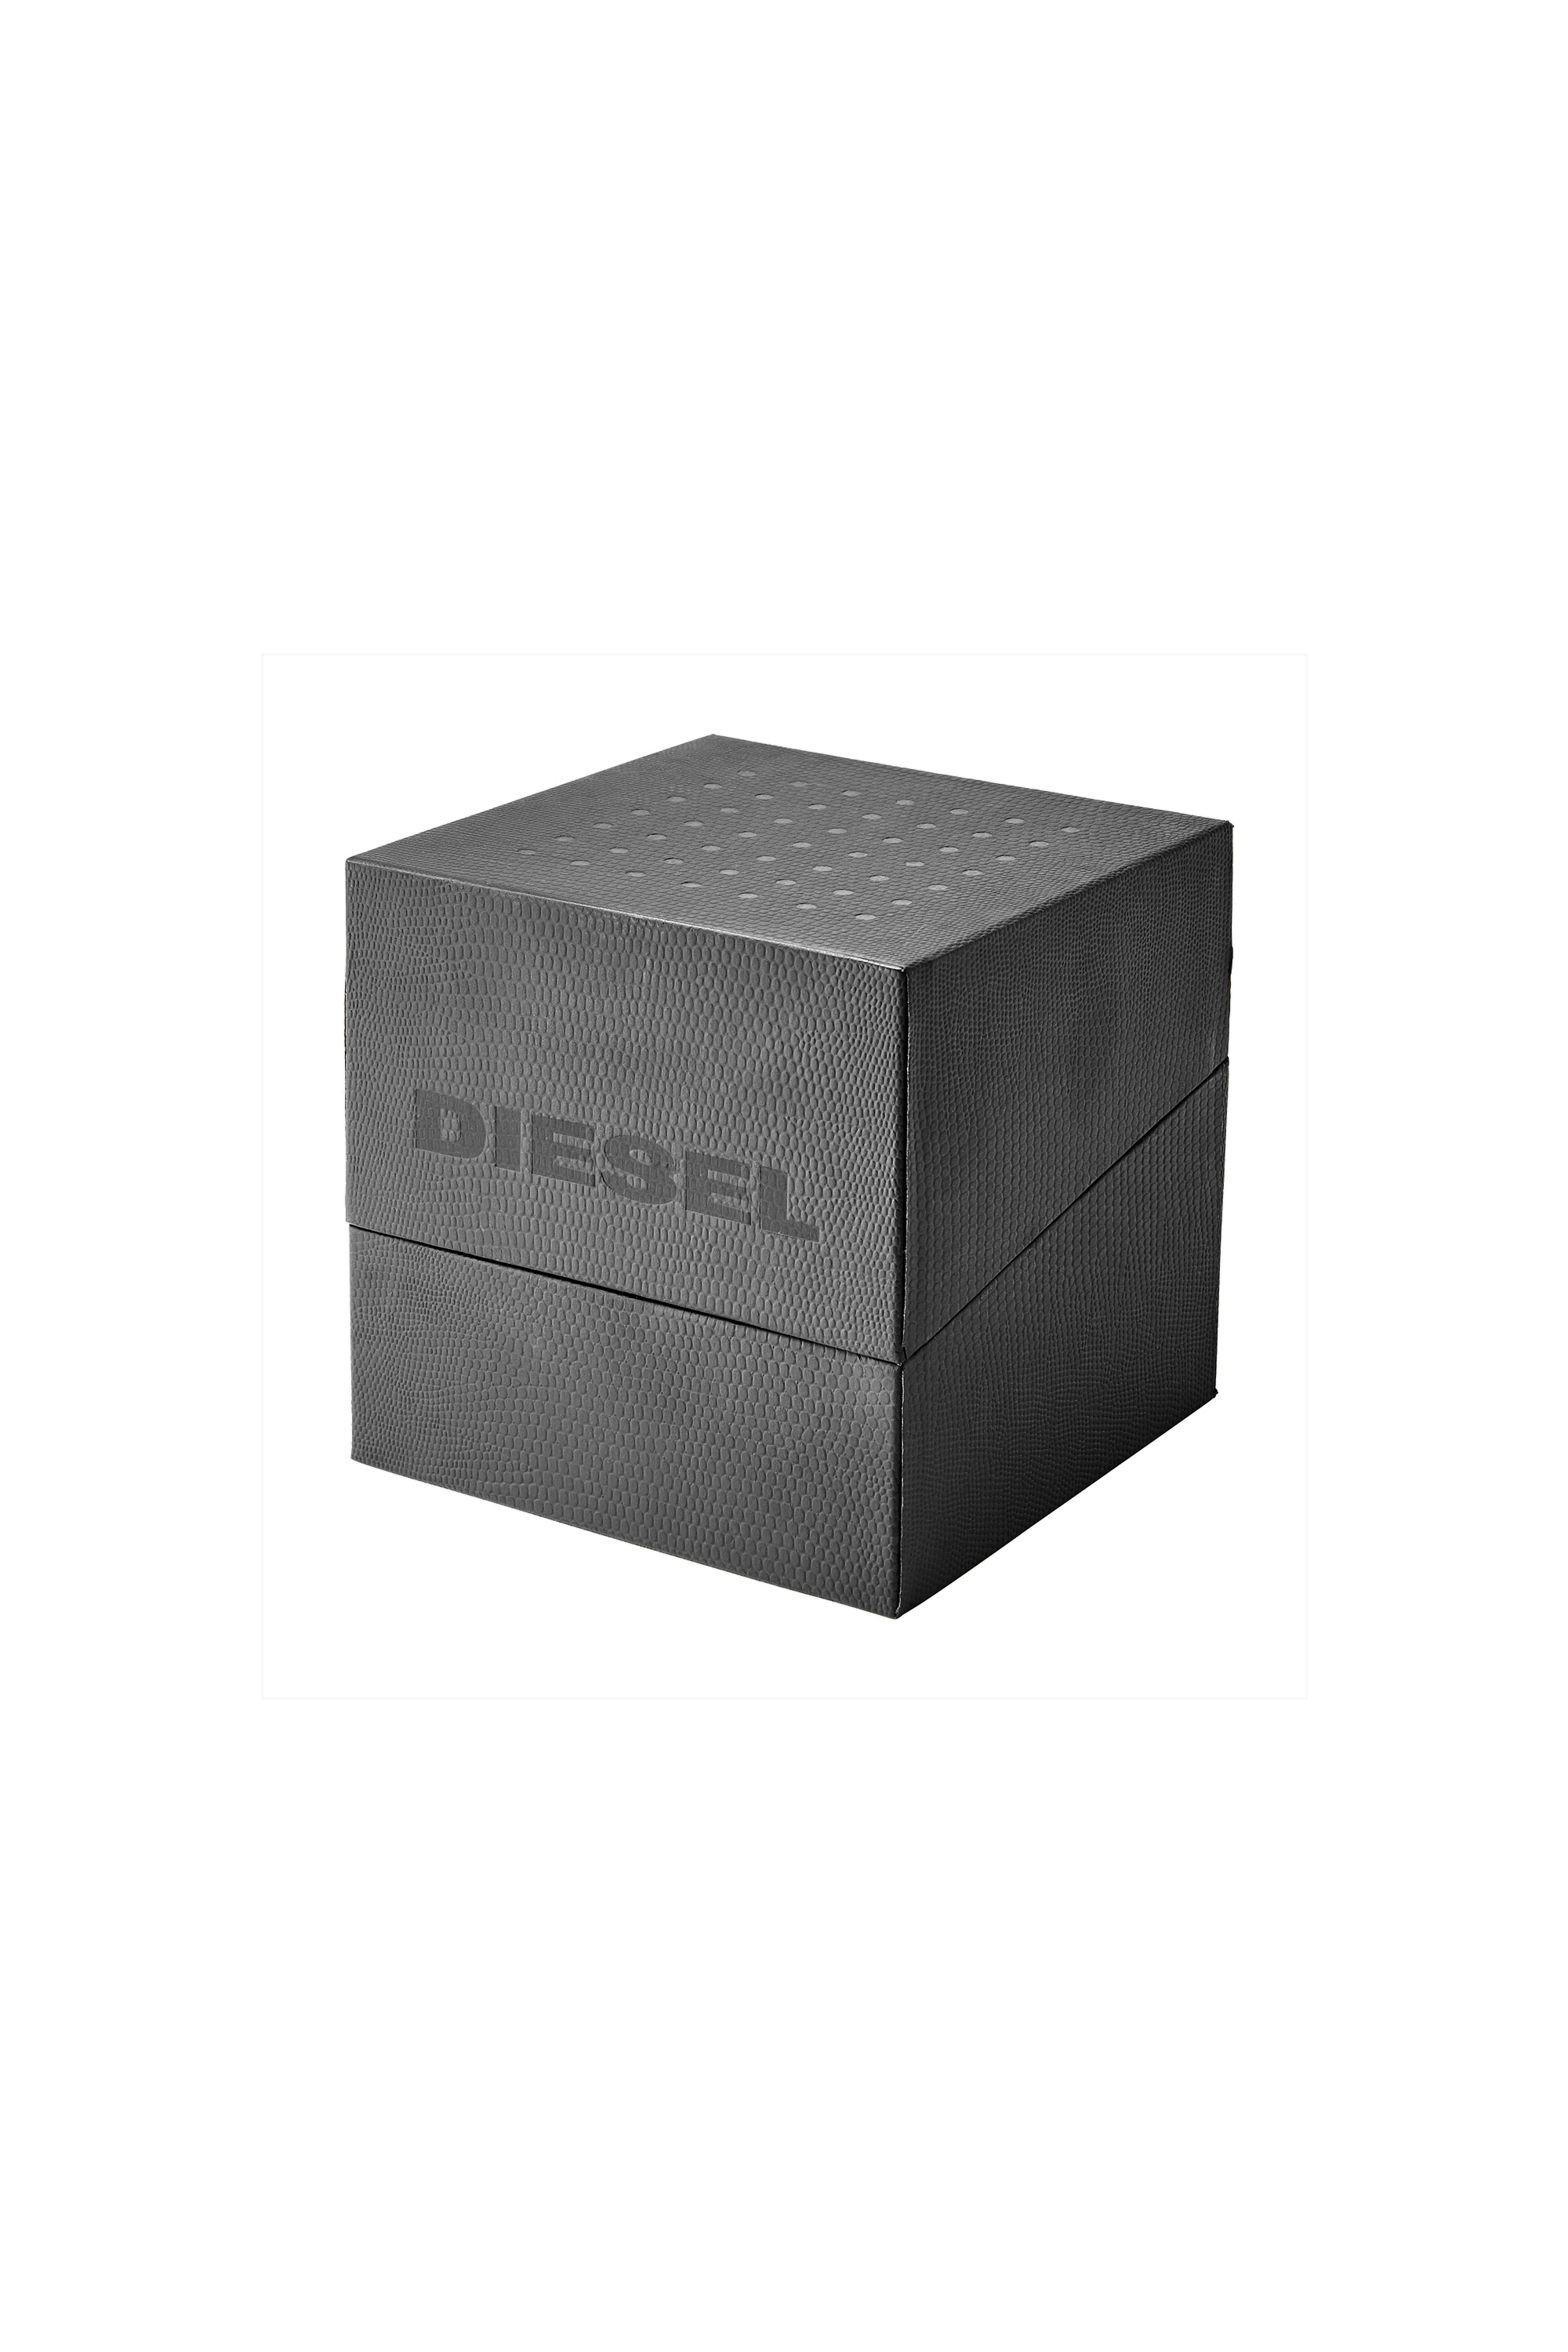 Diesel - DZ7429, Grigio - Image 5